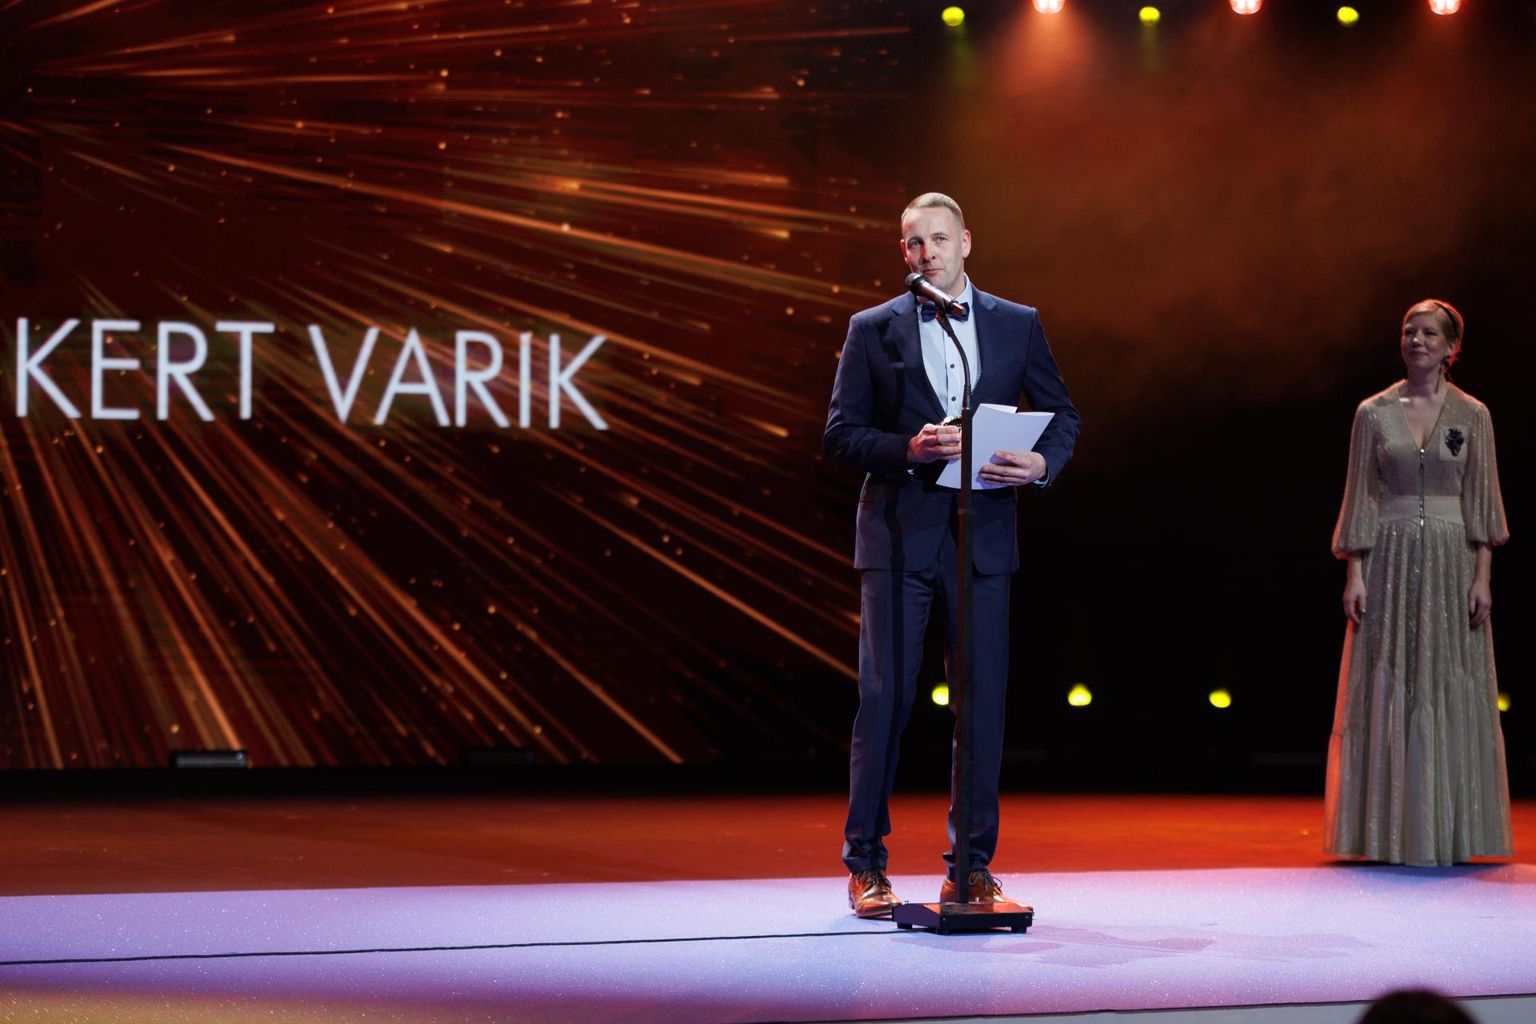 Karksi kandist pärit motokrossisõitja Kert Varik võttis auhinnagalal «Spordiaasta tähed» vastu Eesti Kultuurkapitali kehakultuuri ja spordi sihtkapitali aastapreemia.